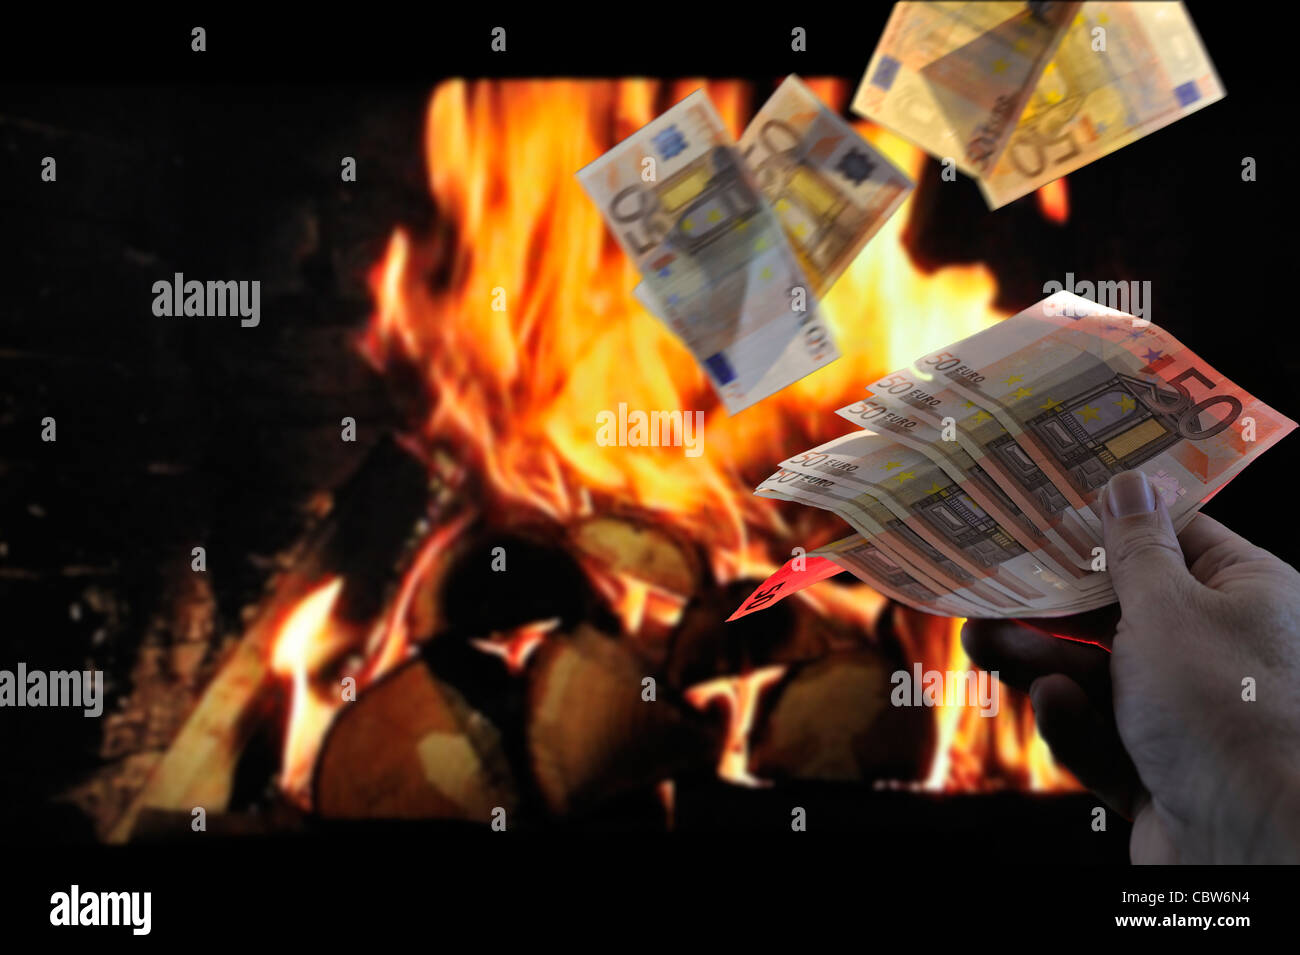 Quemando dinero europeo lanzando billetes en el fuego de la chimenea para simbolizar la recesión y la crisis en la zona de Europa Foto de stock